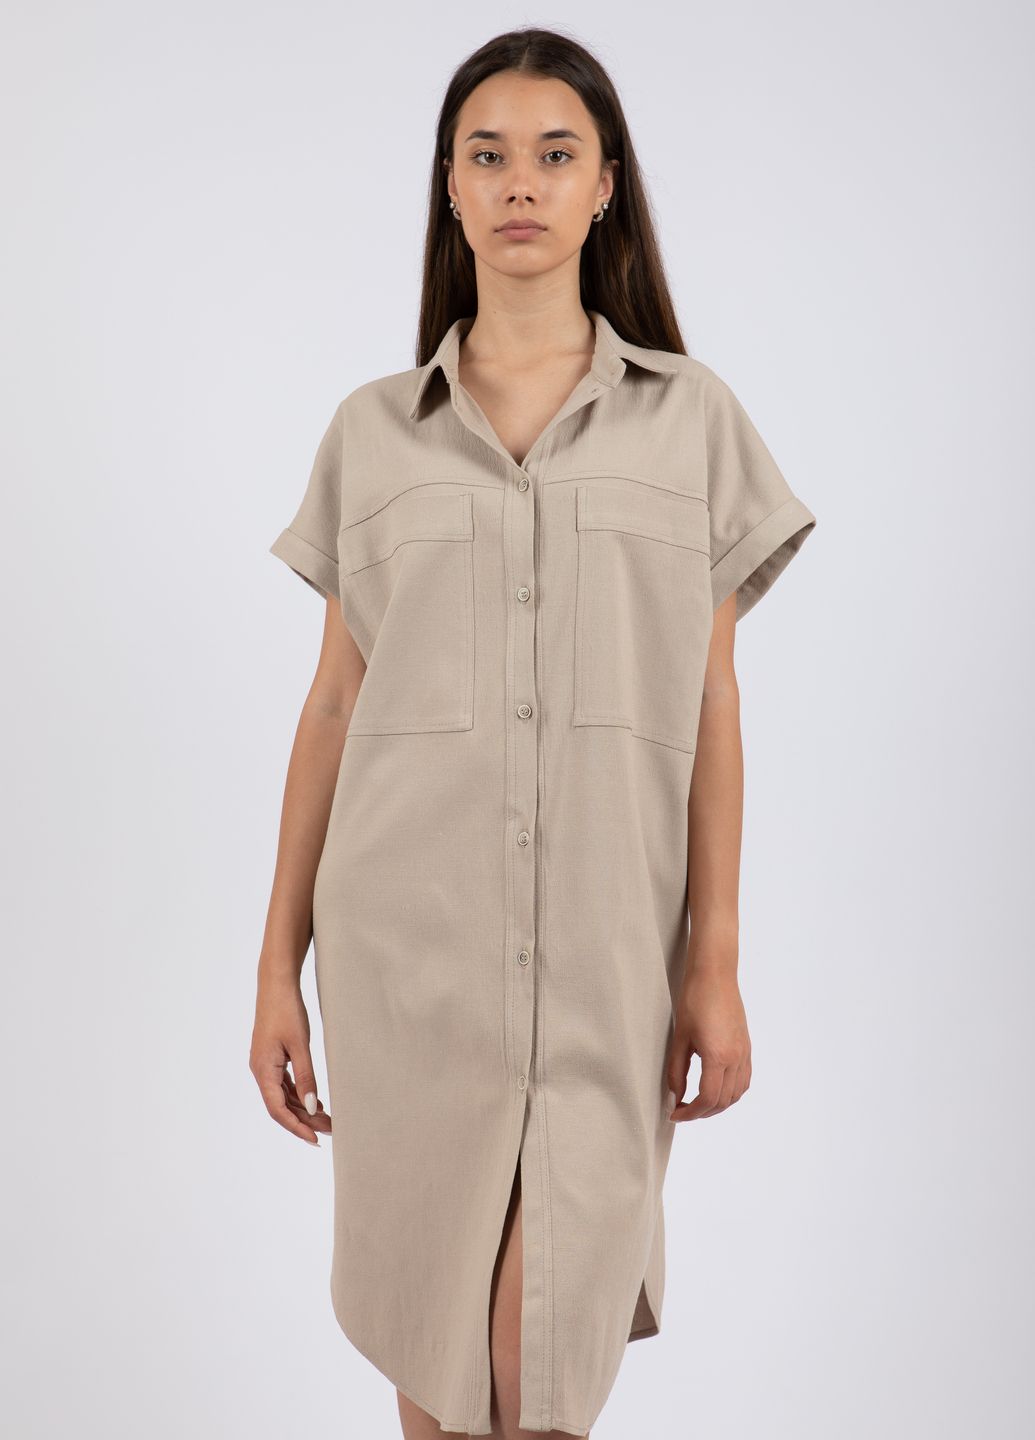 Купить Льняное платье-рубашка Merlini Орлеан 700000001 - Бежевый, 42-44 в интернет-магазине